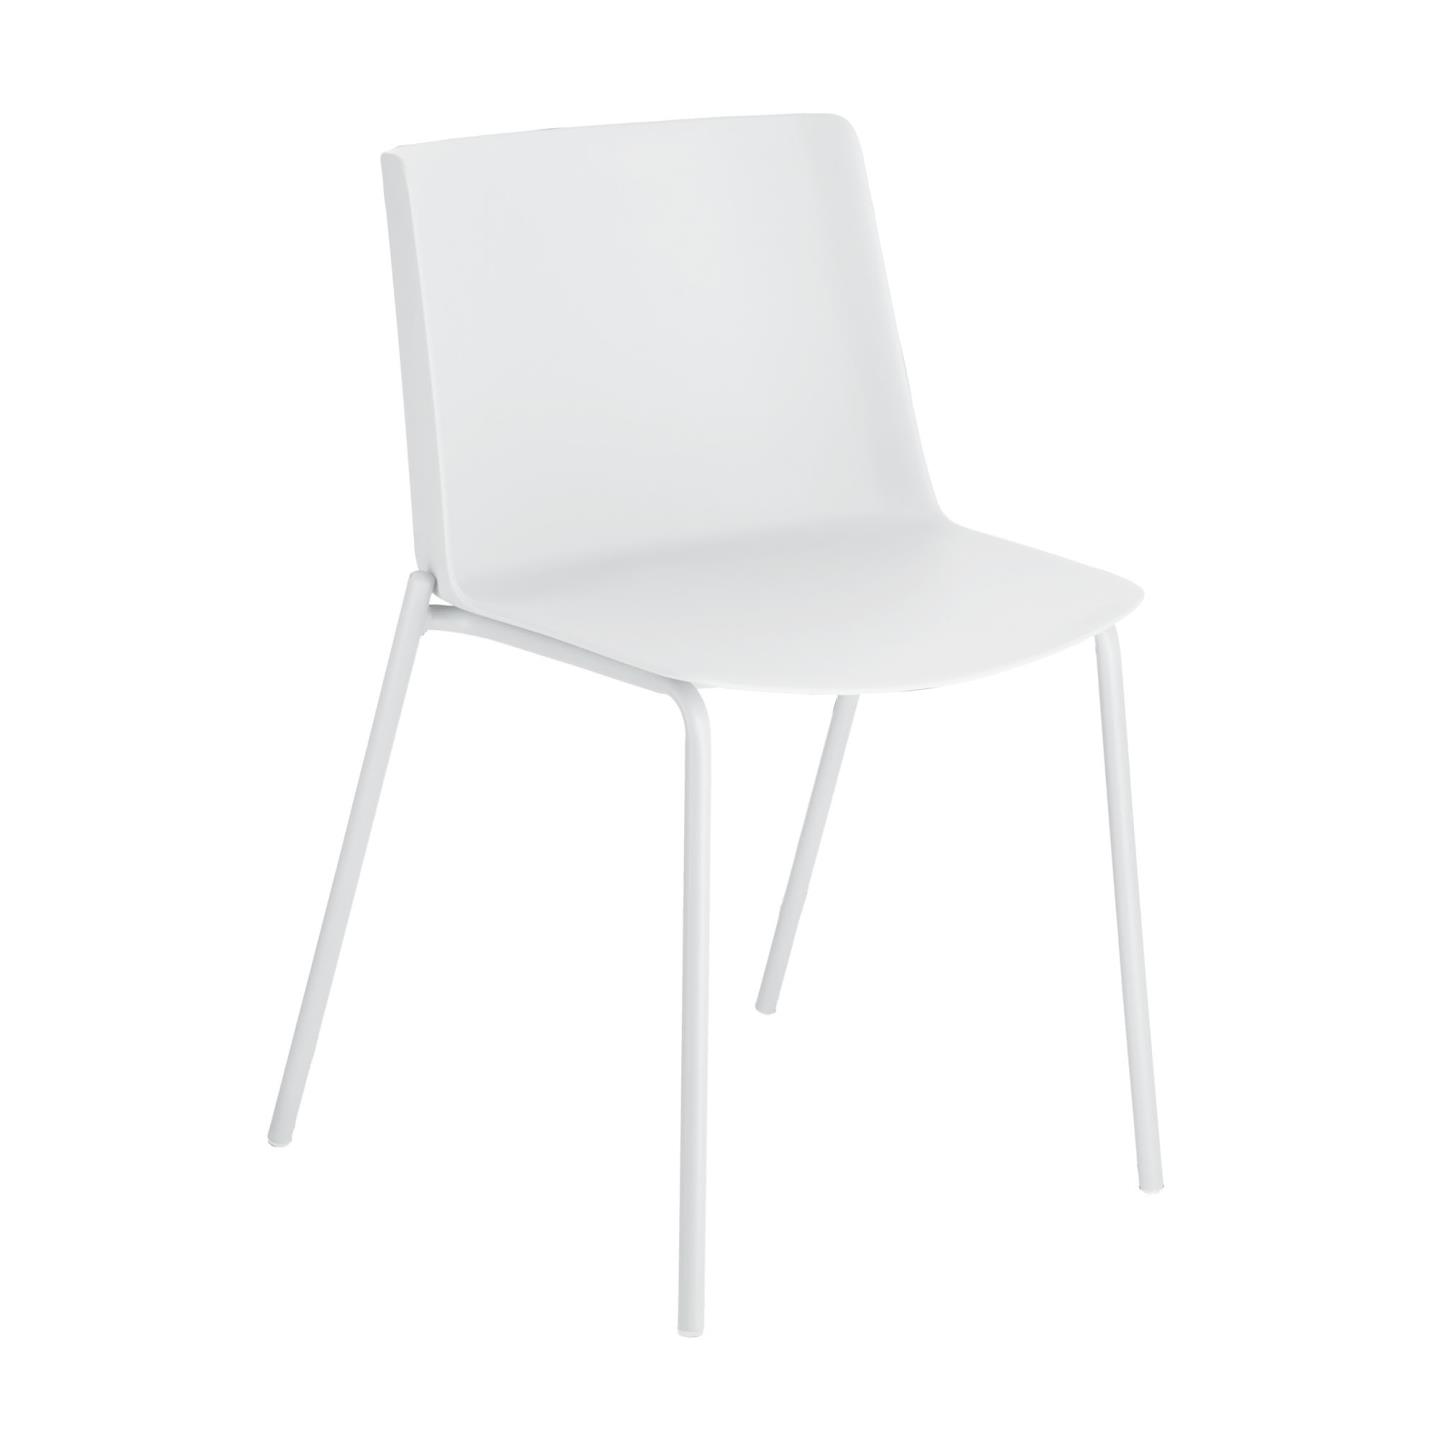 LAFORMA Hannia spisebordsstol - hvid polypropylen og hvid stål